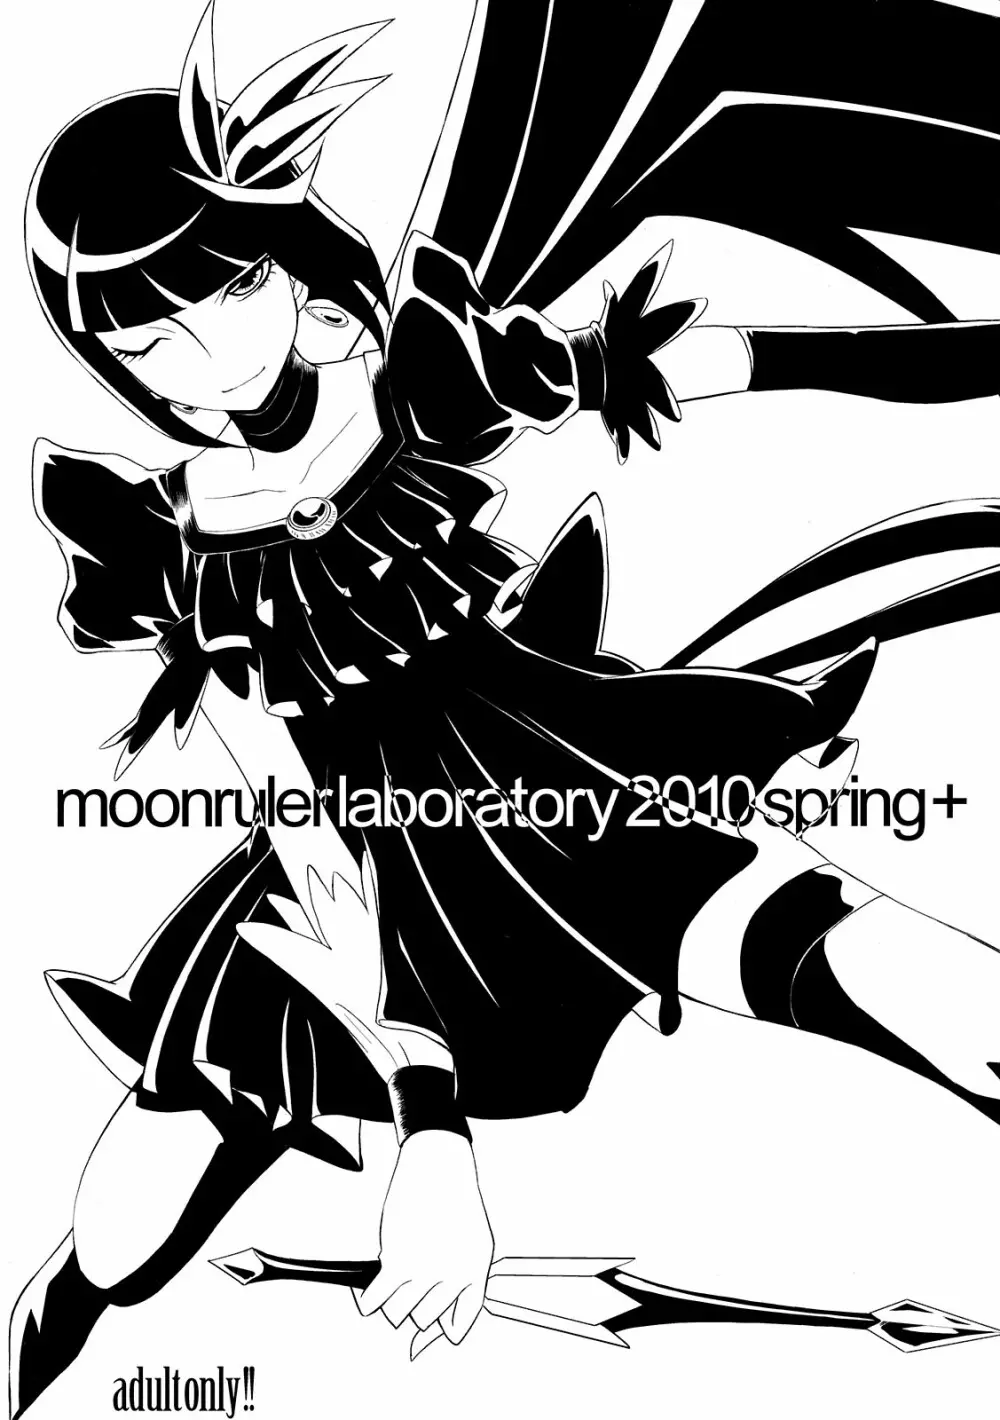 moonrulerlaboratory 2010 spring+